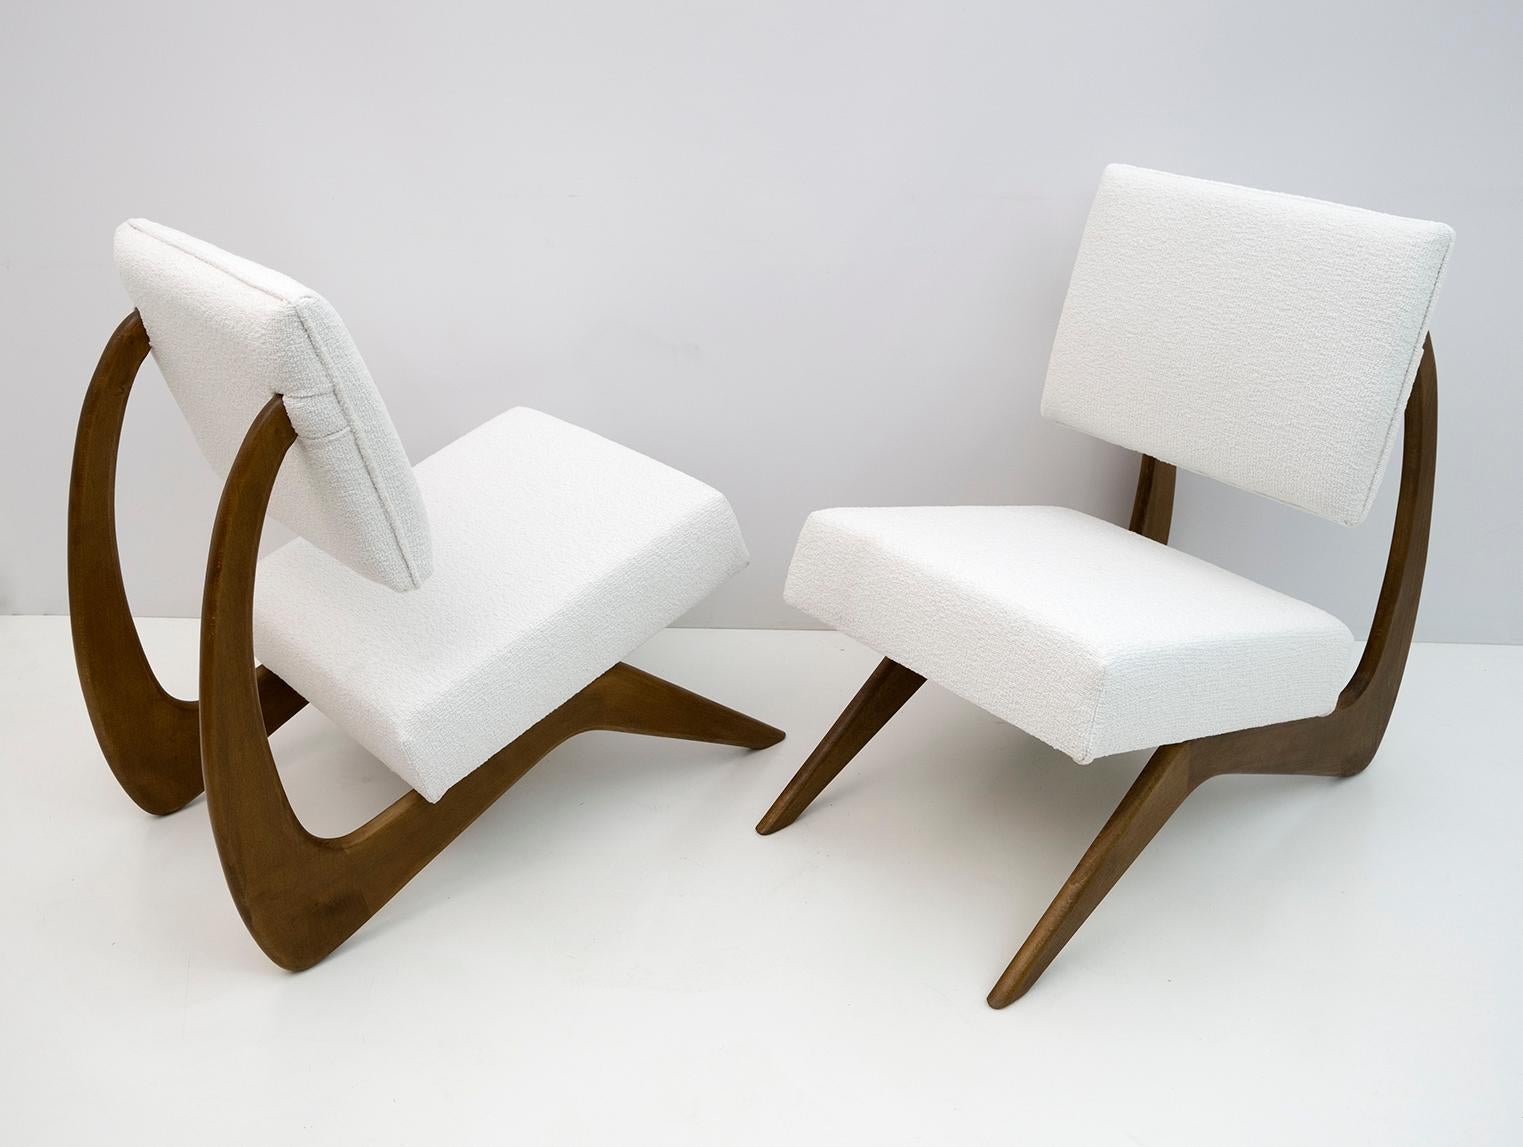 Ein Paar Sessel des amerikanischen Designers Adrian Pearsall. Das Gestell dieser Cocktail-Loungesessel ist aus Walnussholz in schön geschwungener Form gefertigt und mit weißem Chenille-Stoff gepolstert. Die Sessel sind restauriert und neu gepolstert